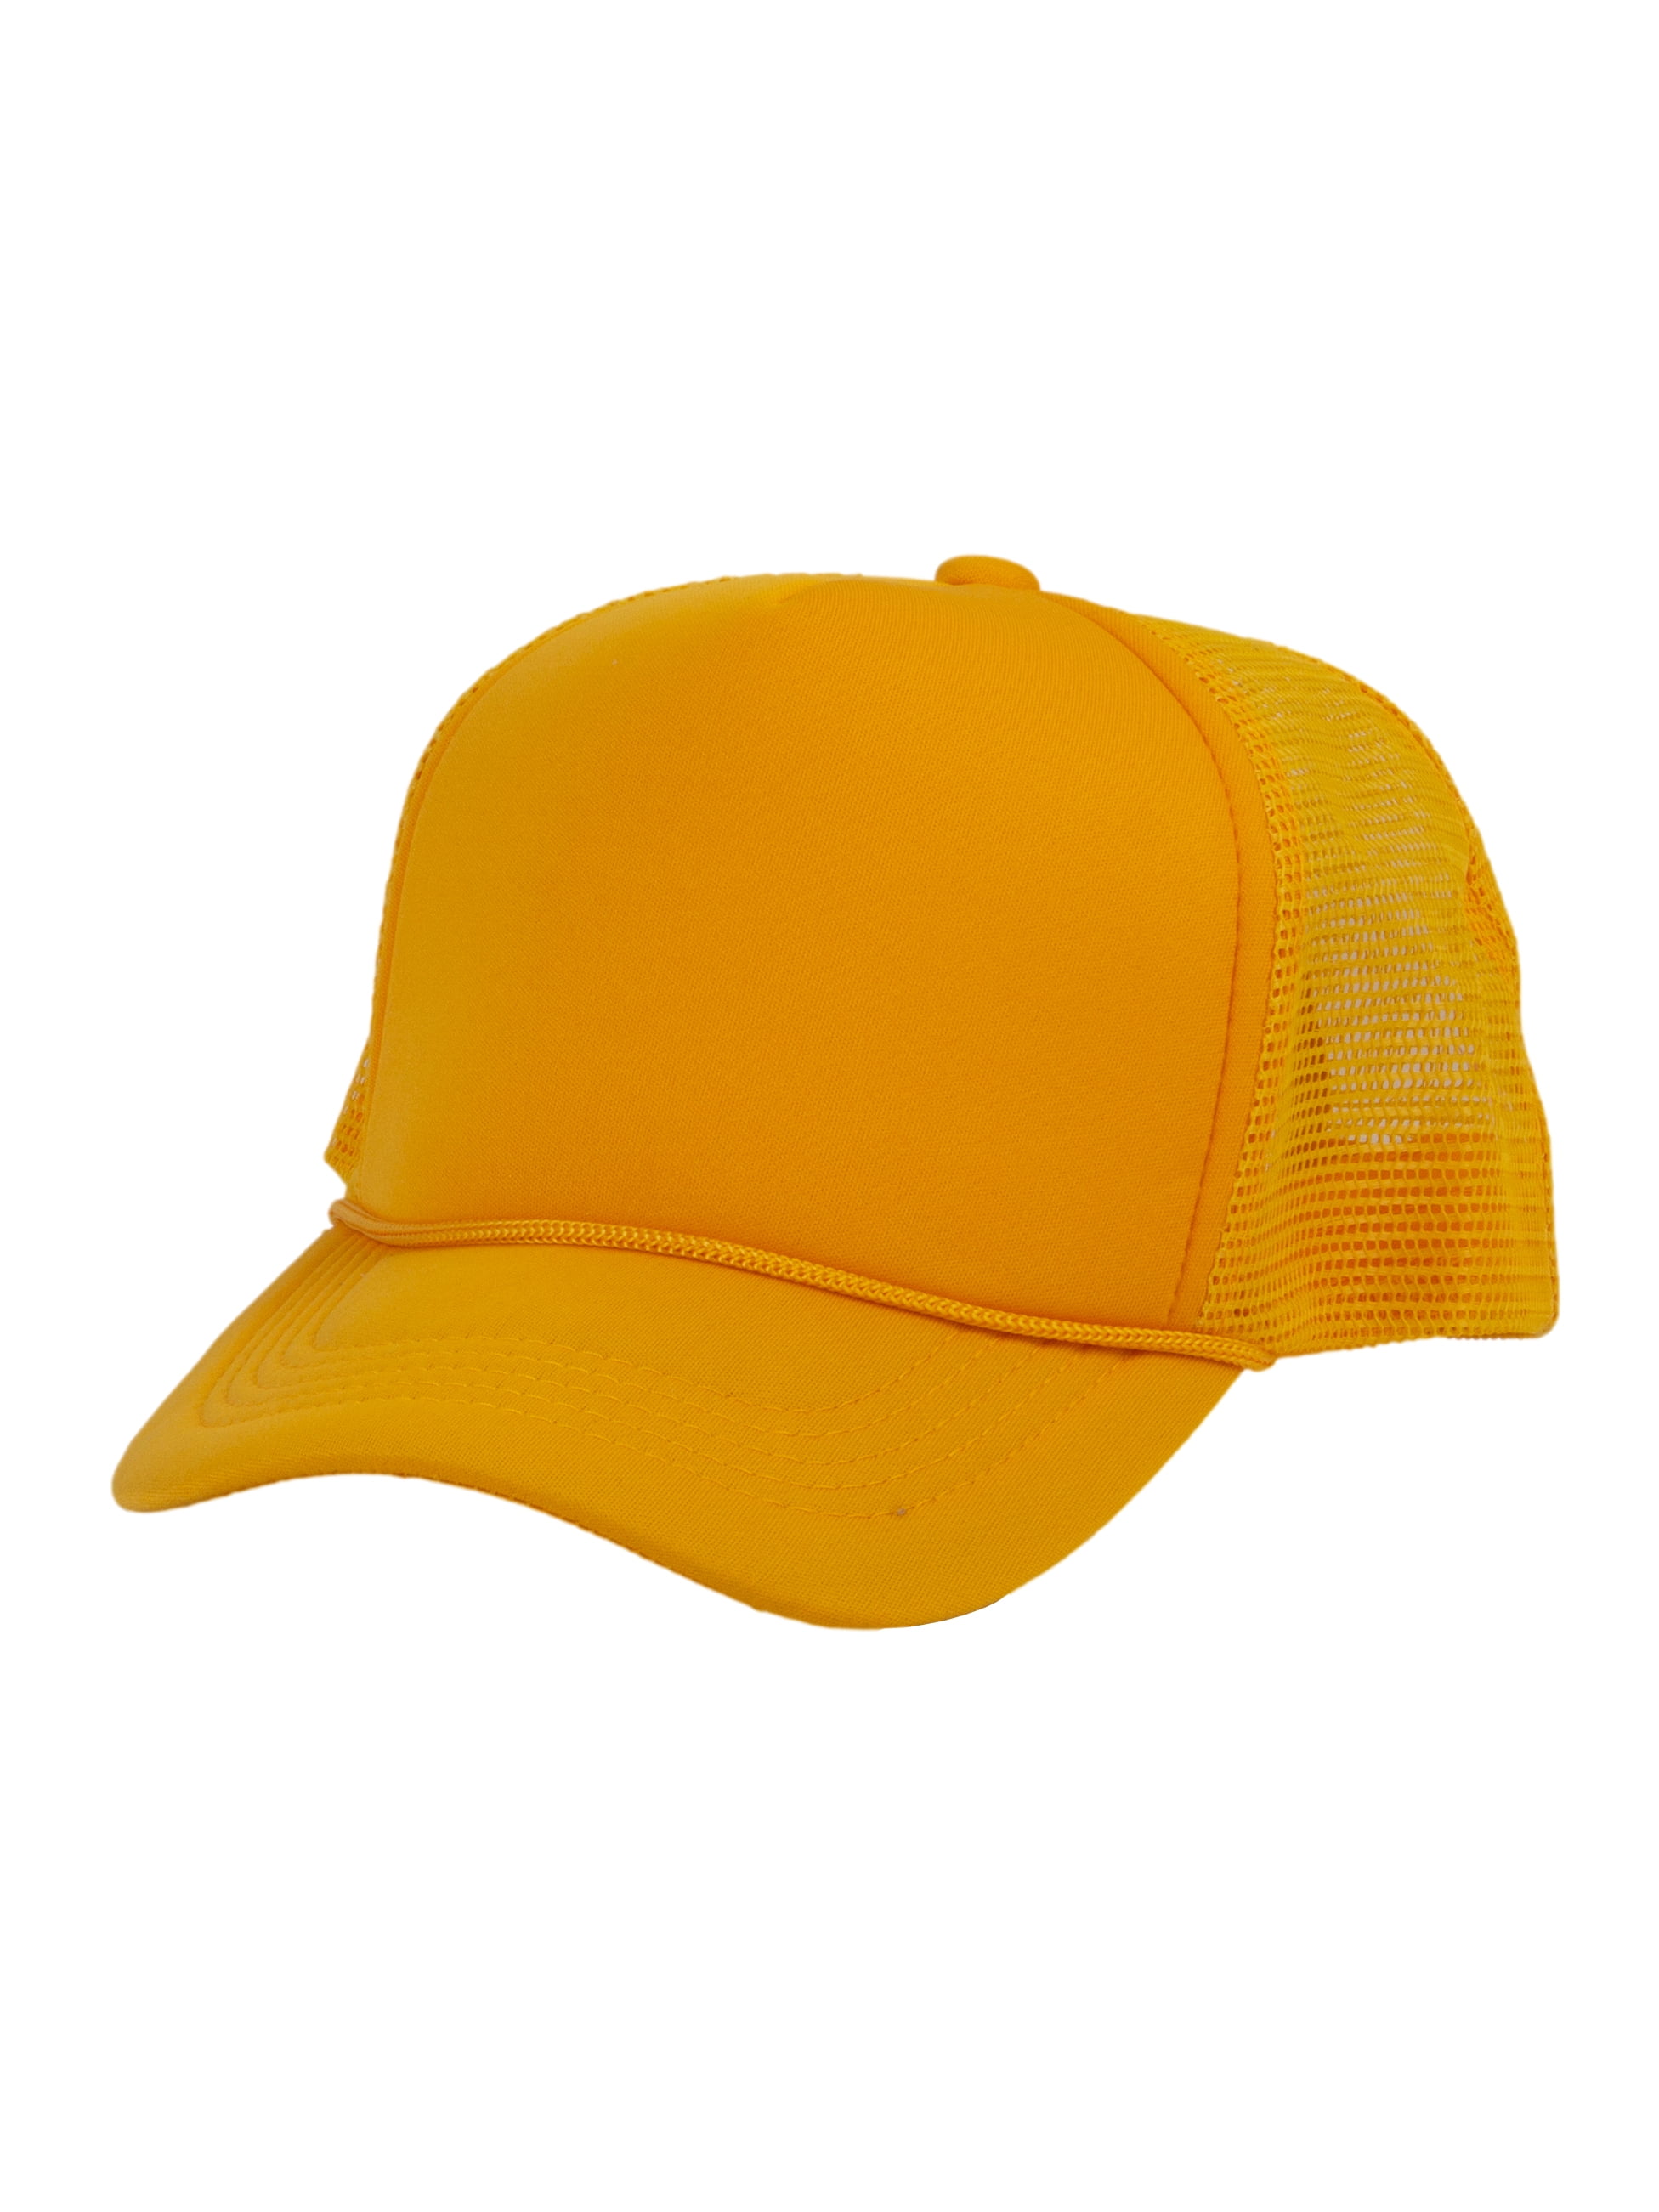 Top Headwear Blank Trucker Hat - Mens Trucker Hats Foam Mesh Snapback  White/Beige 